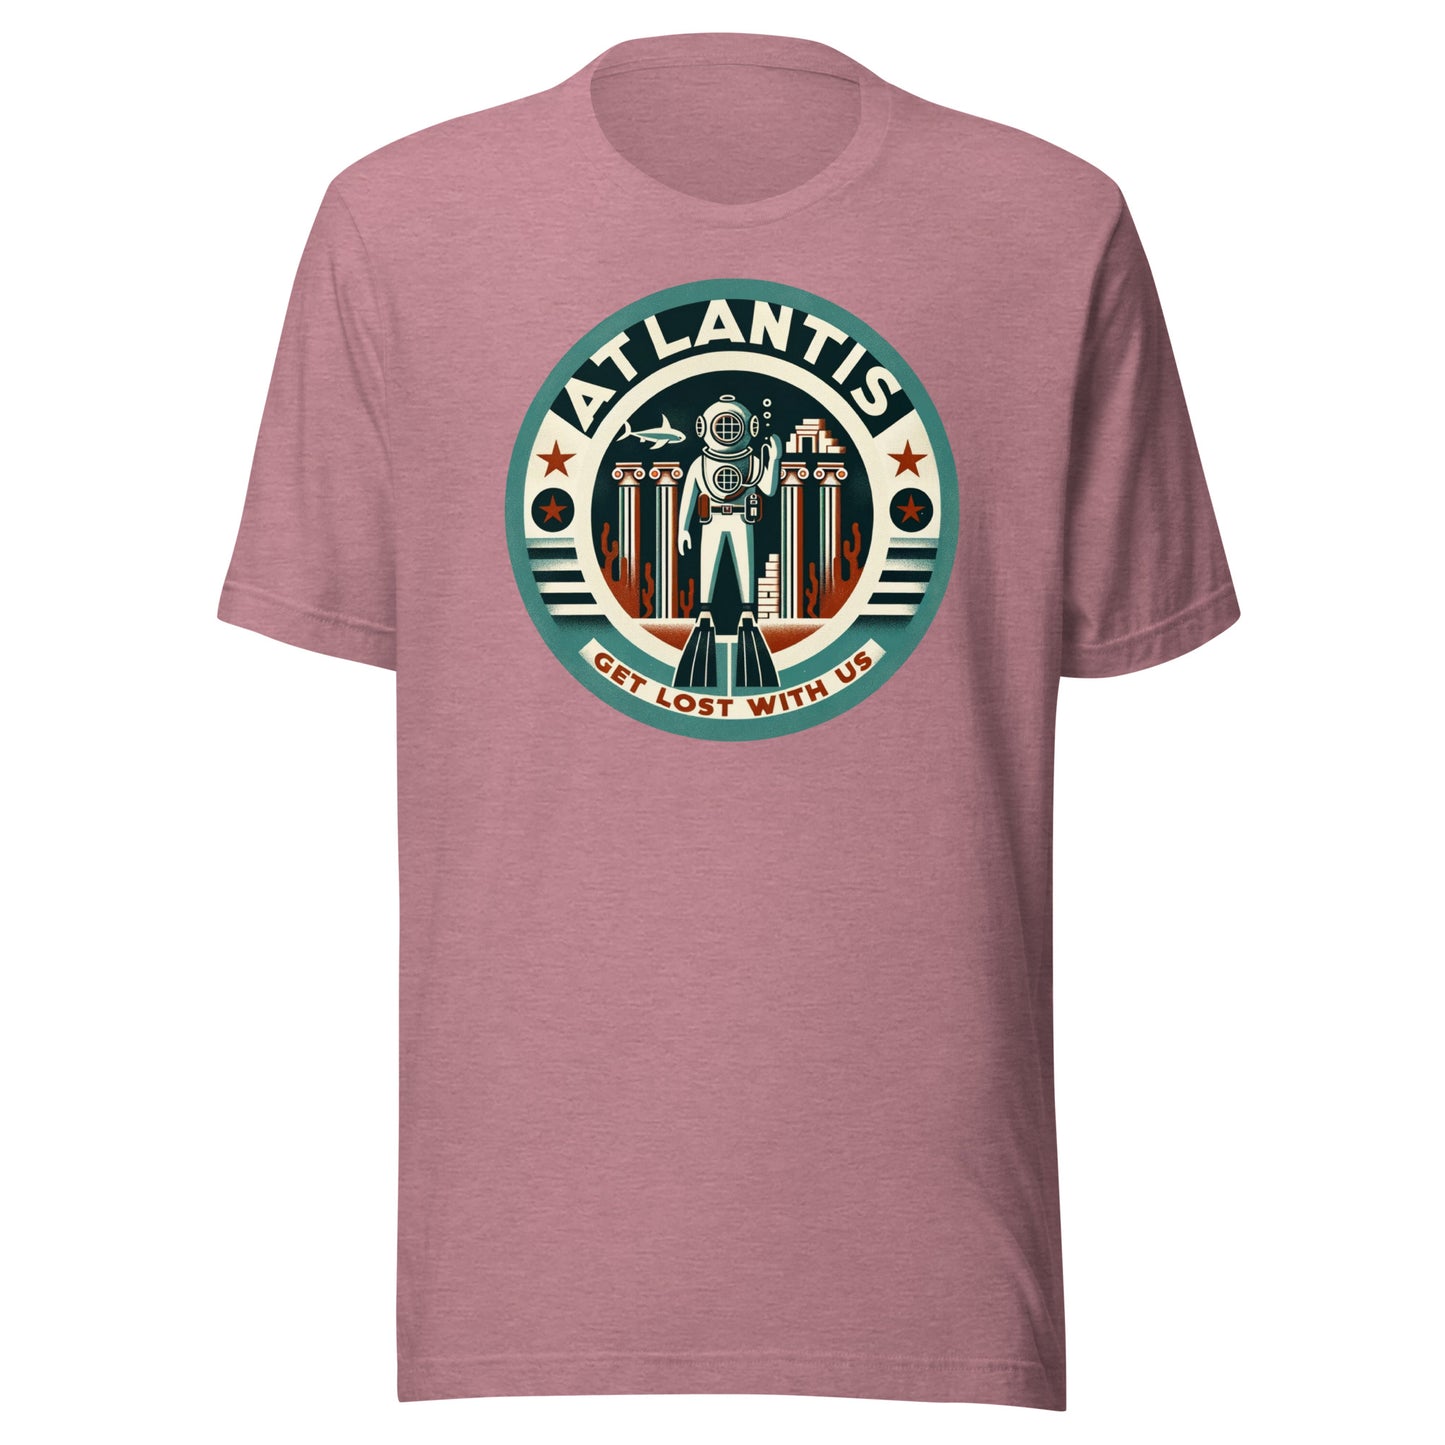 Atlantis Dive Tours - Get Lost with Us Unisex t-shirt